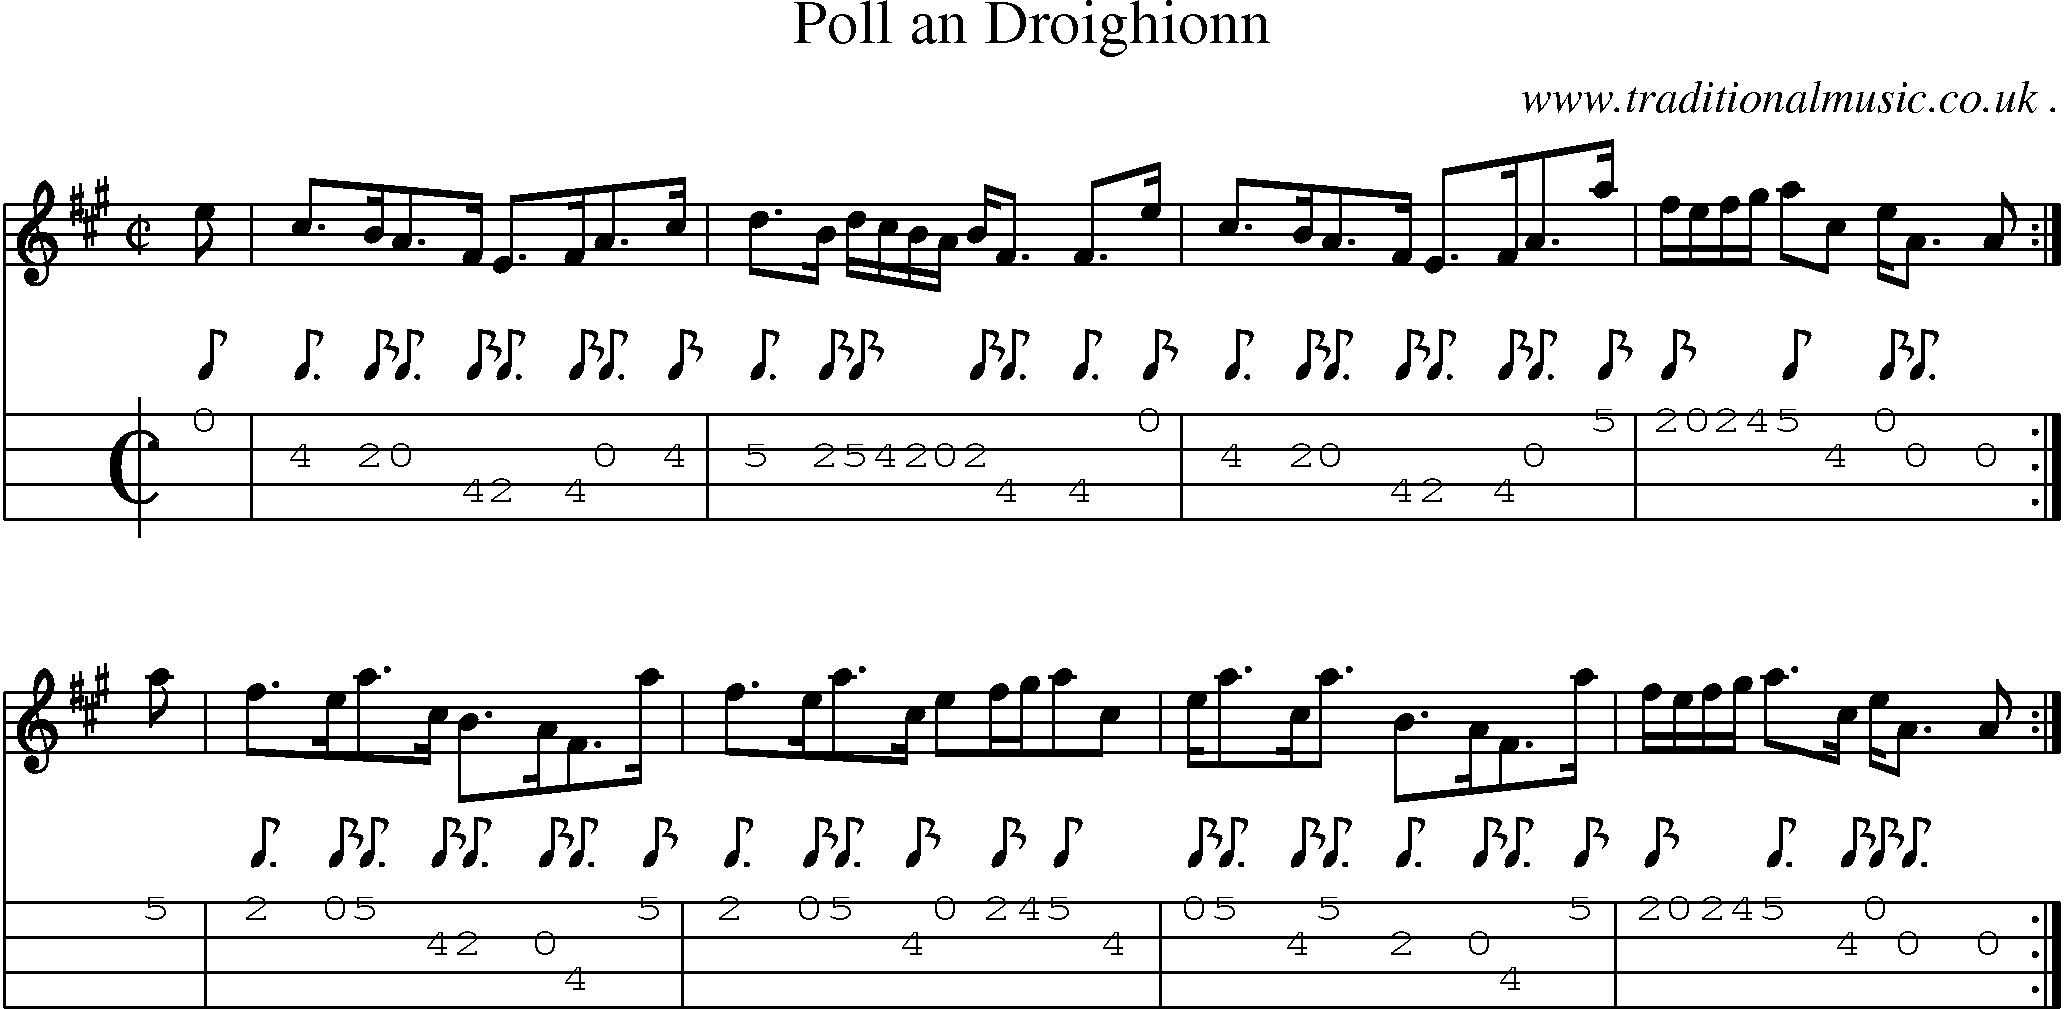 Sheet-music  score, Chords and Mandolin Tabs for Poll An Droighionn